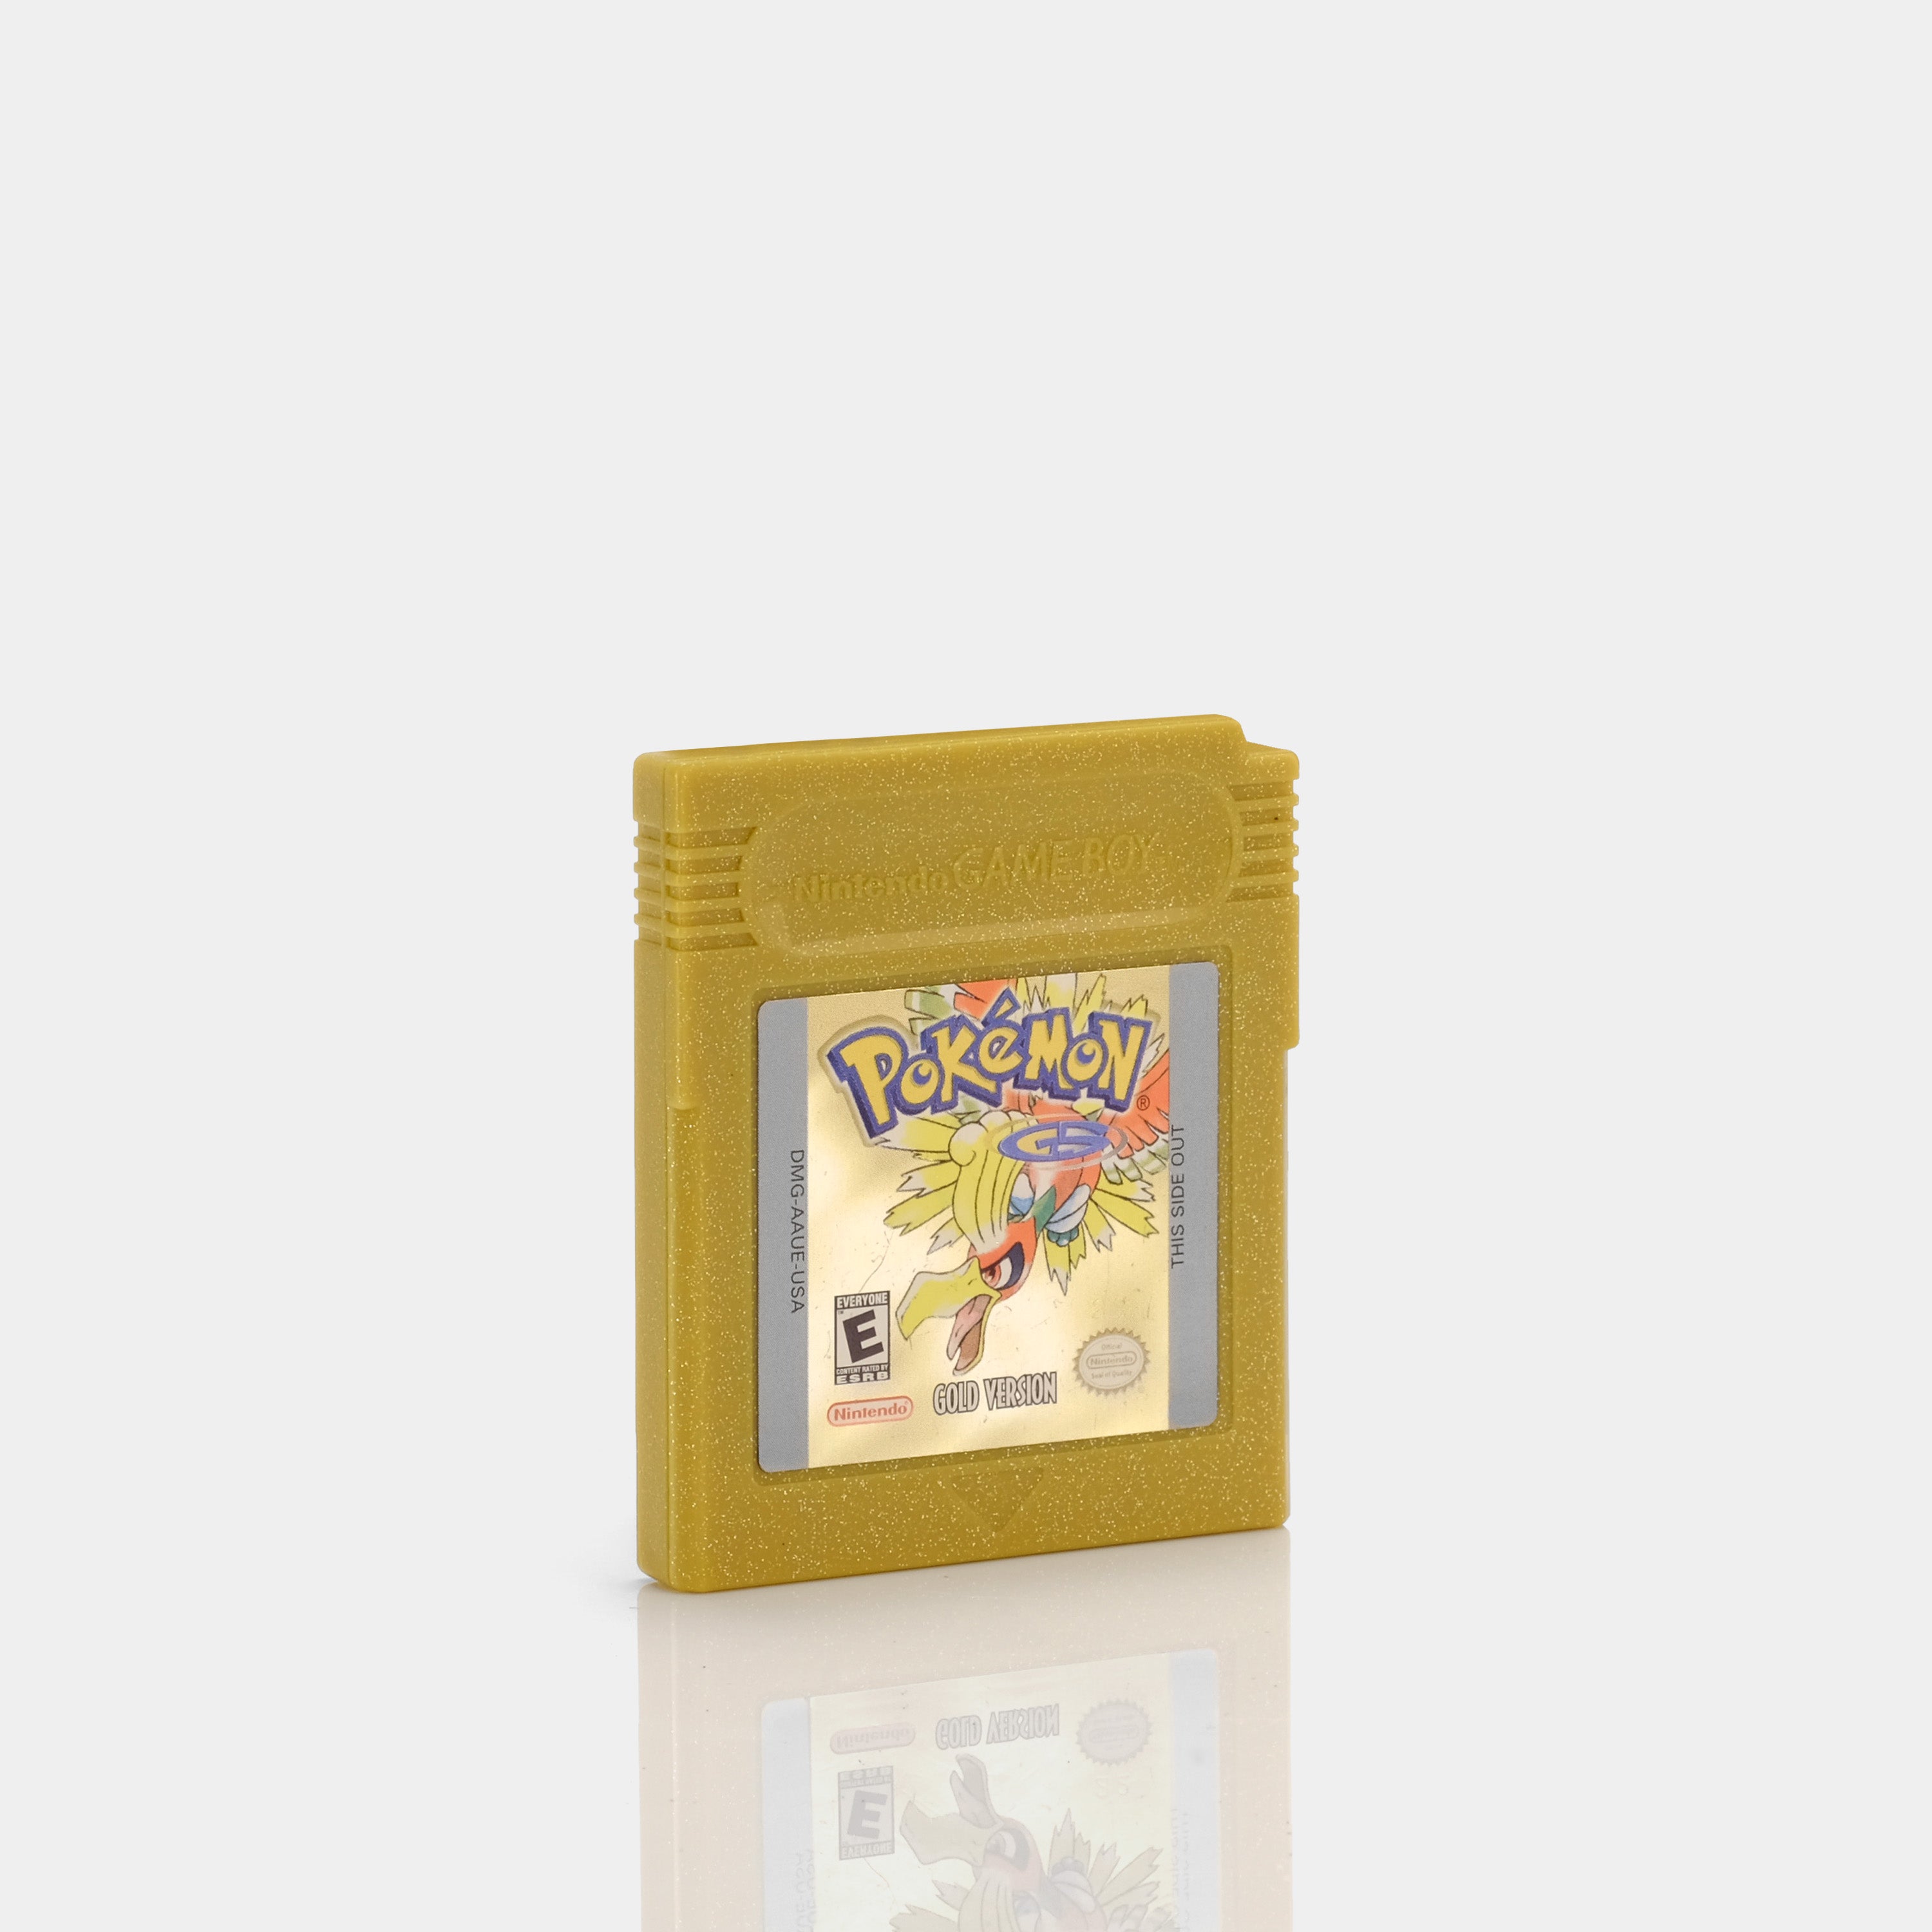 Pokémon Version Or - Jeu Game Boy Color - jouets rétro jeux de